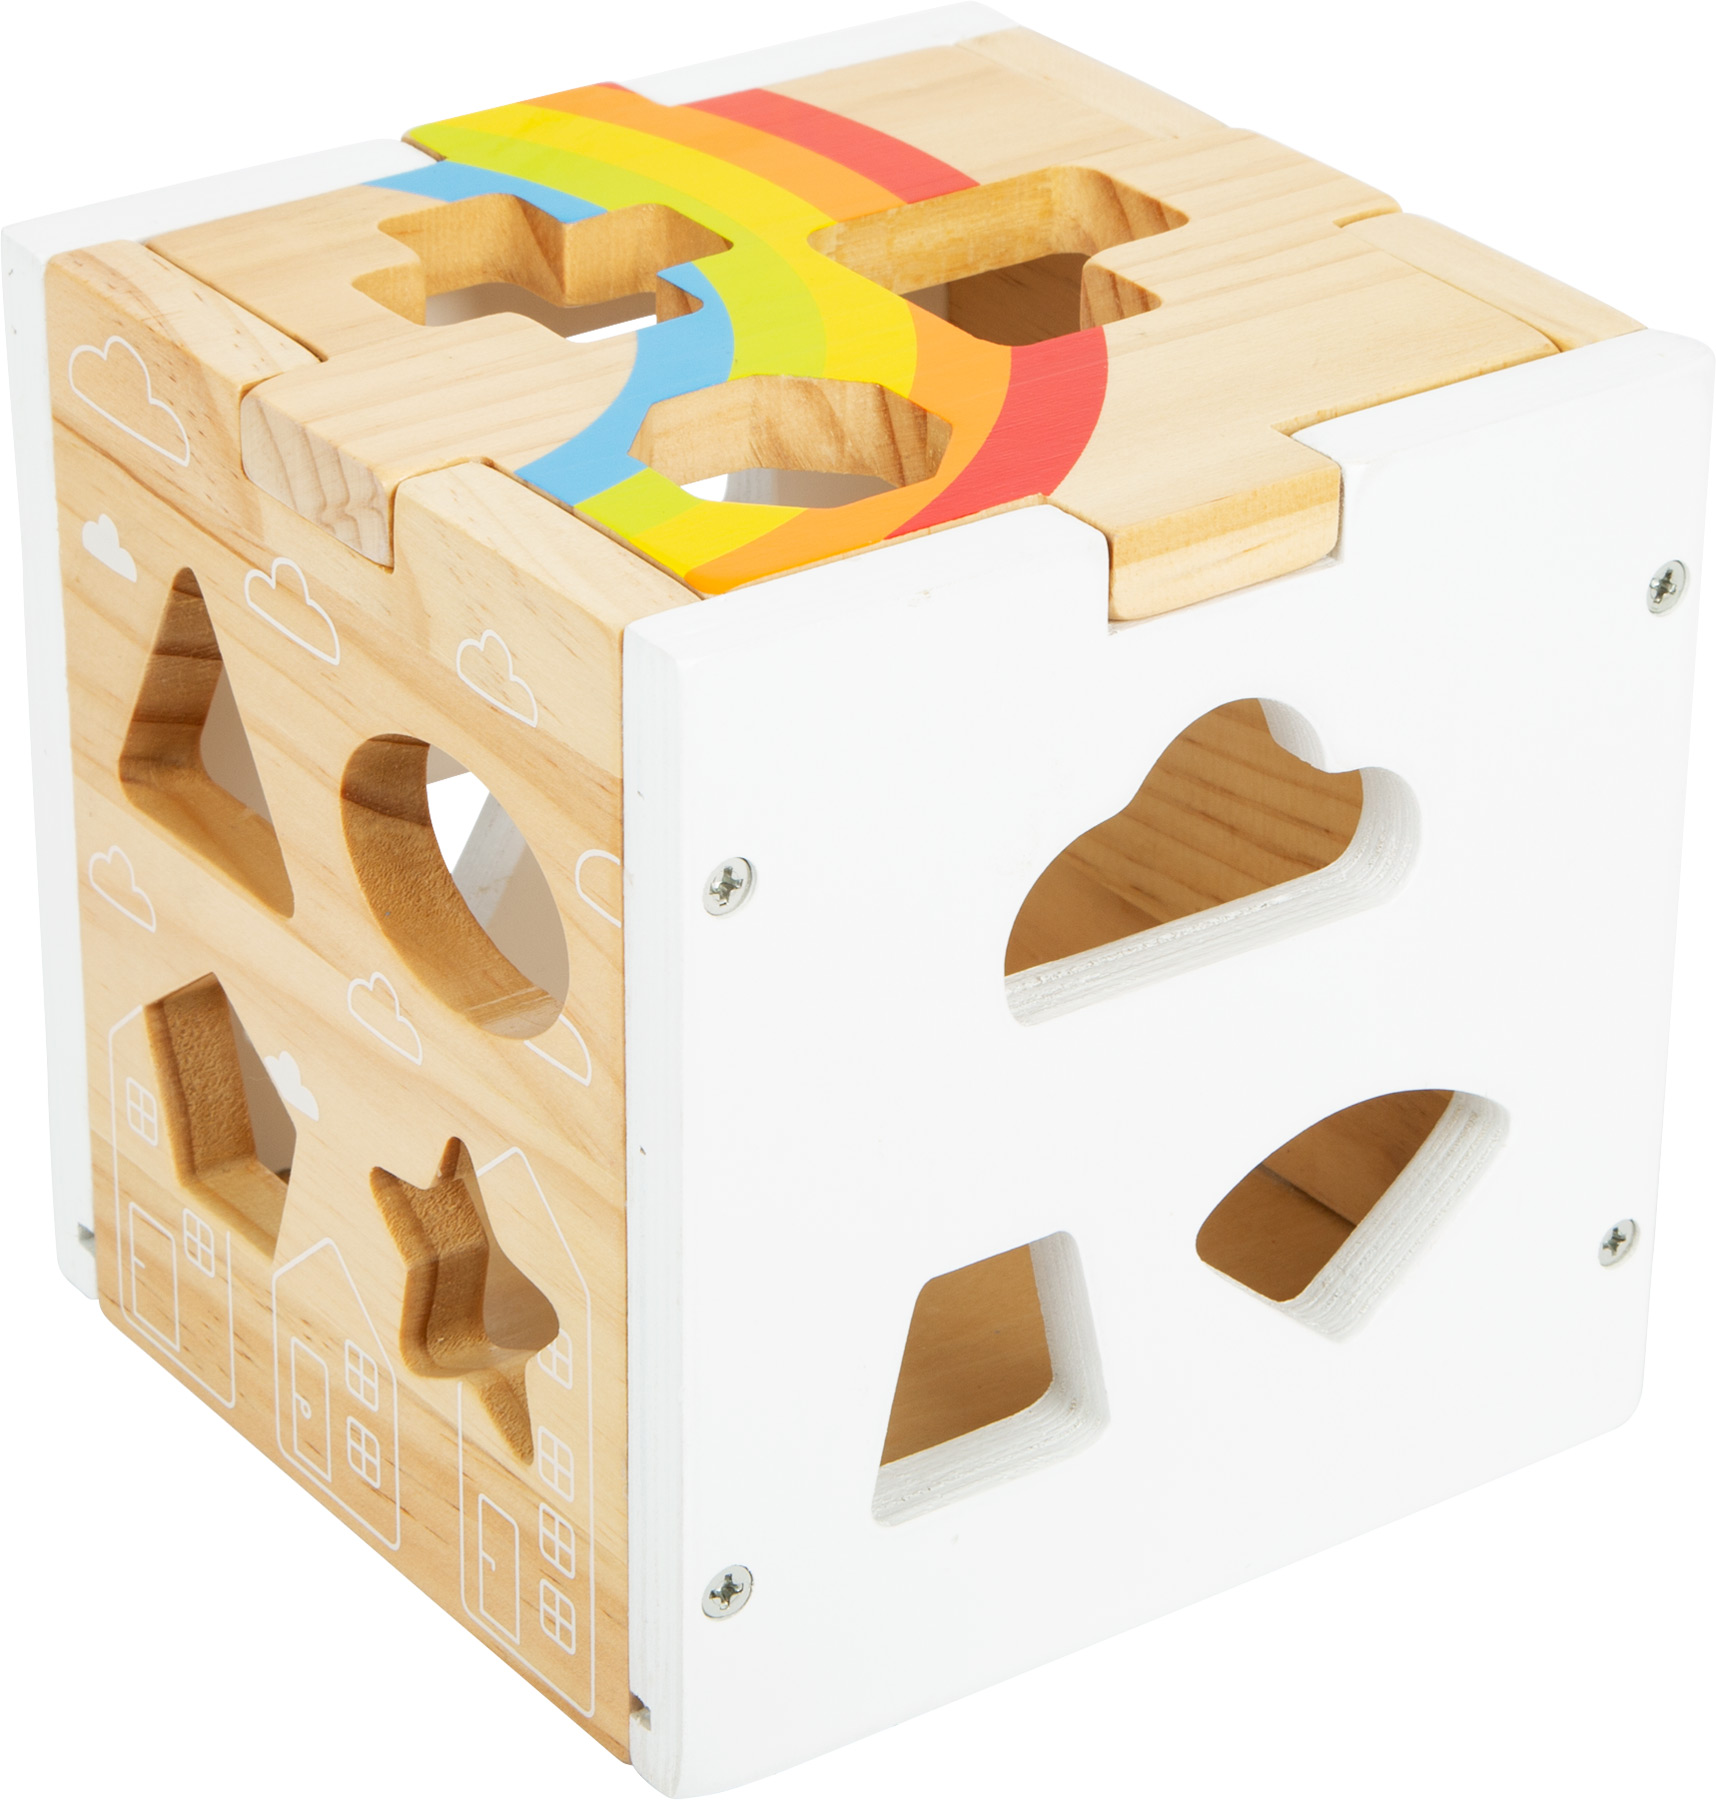 Moderner Steckwürfel aus Holz mit Regenbogenfarben